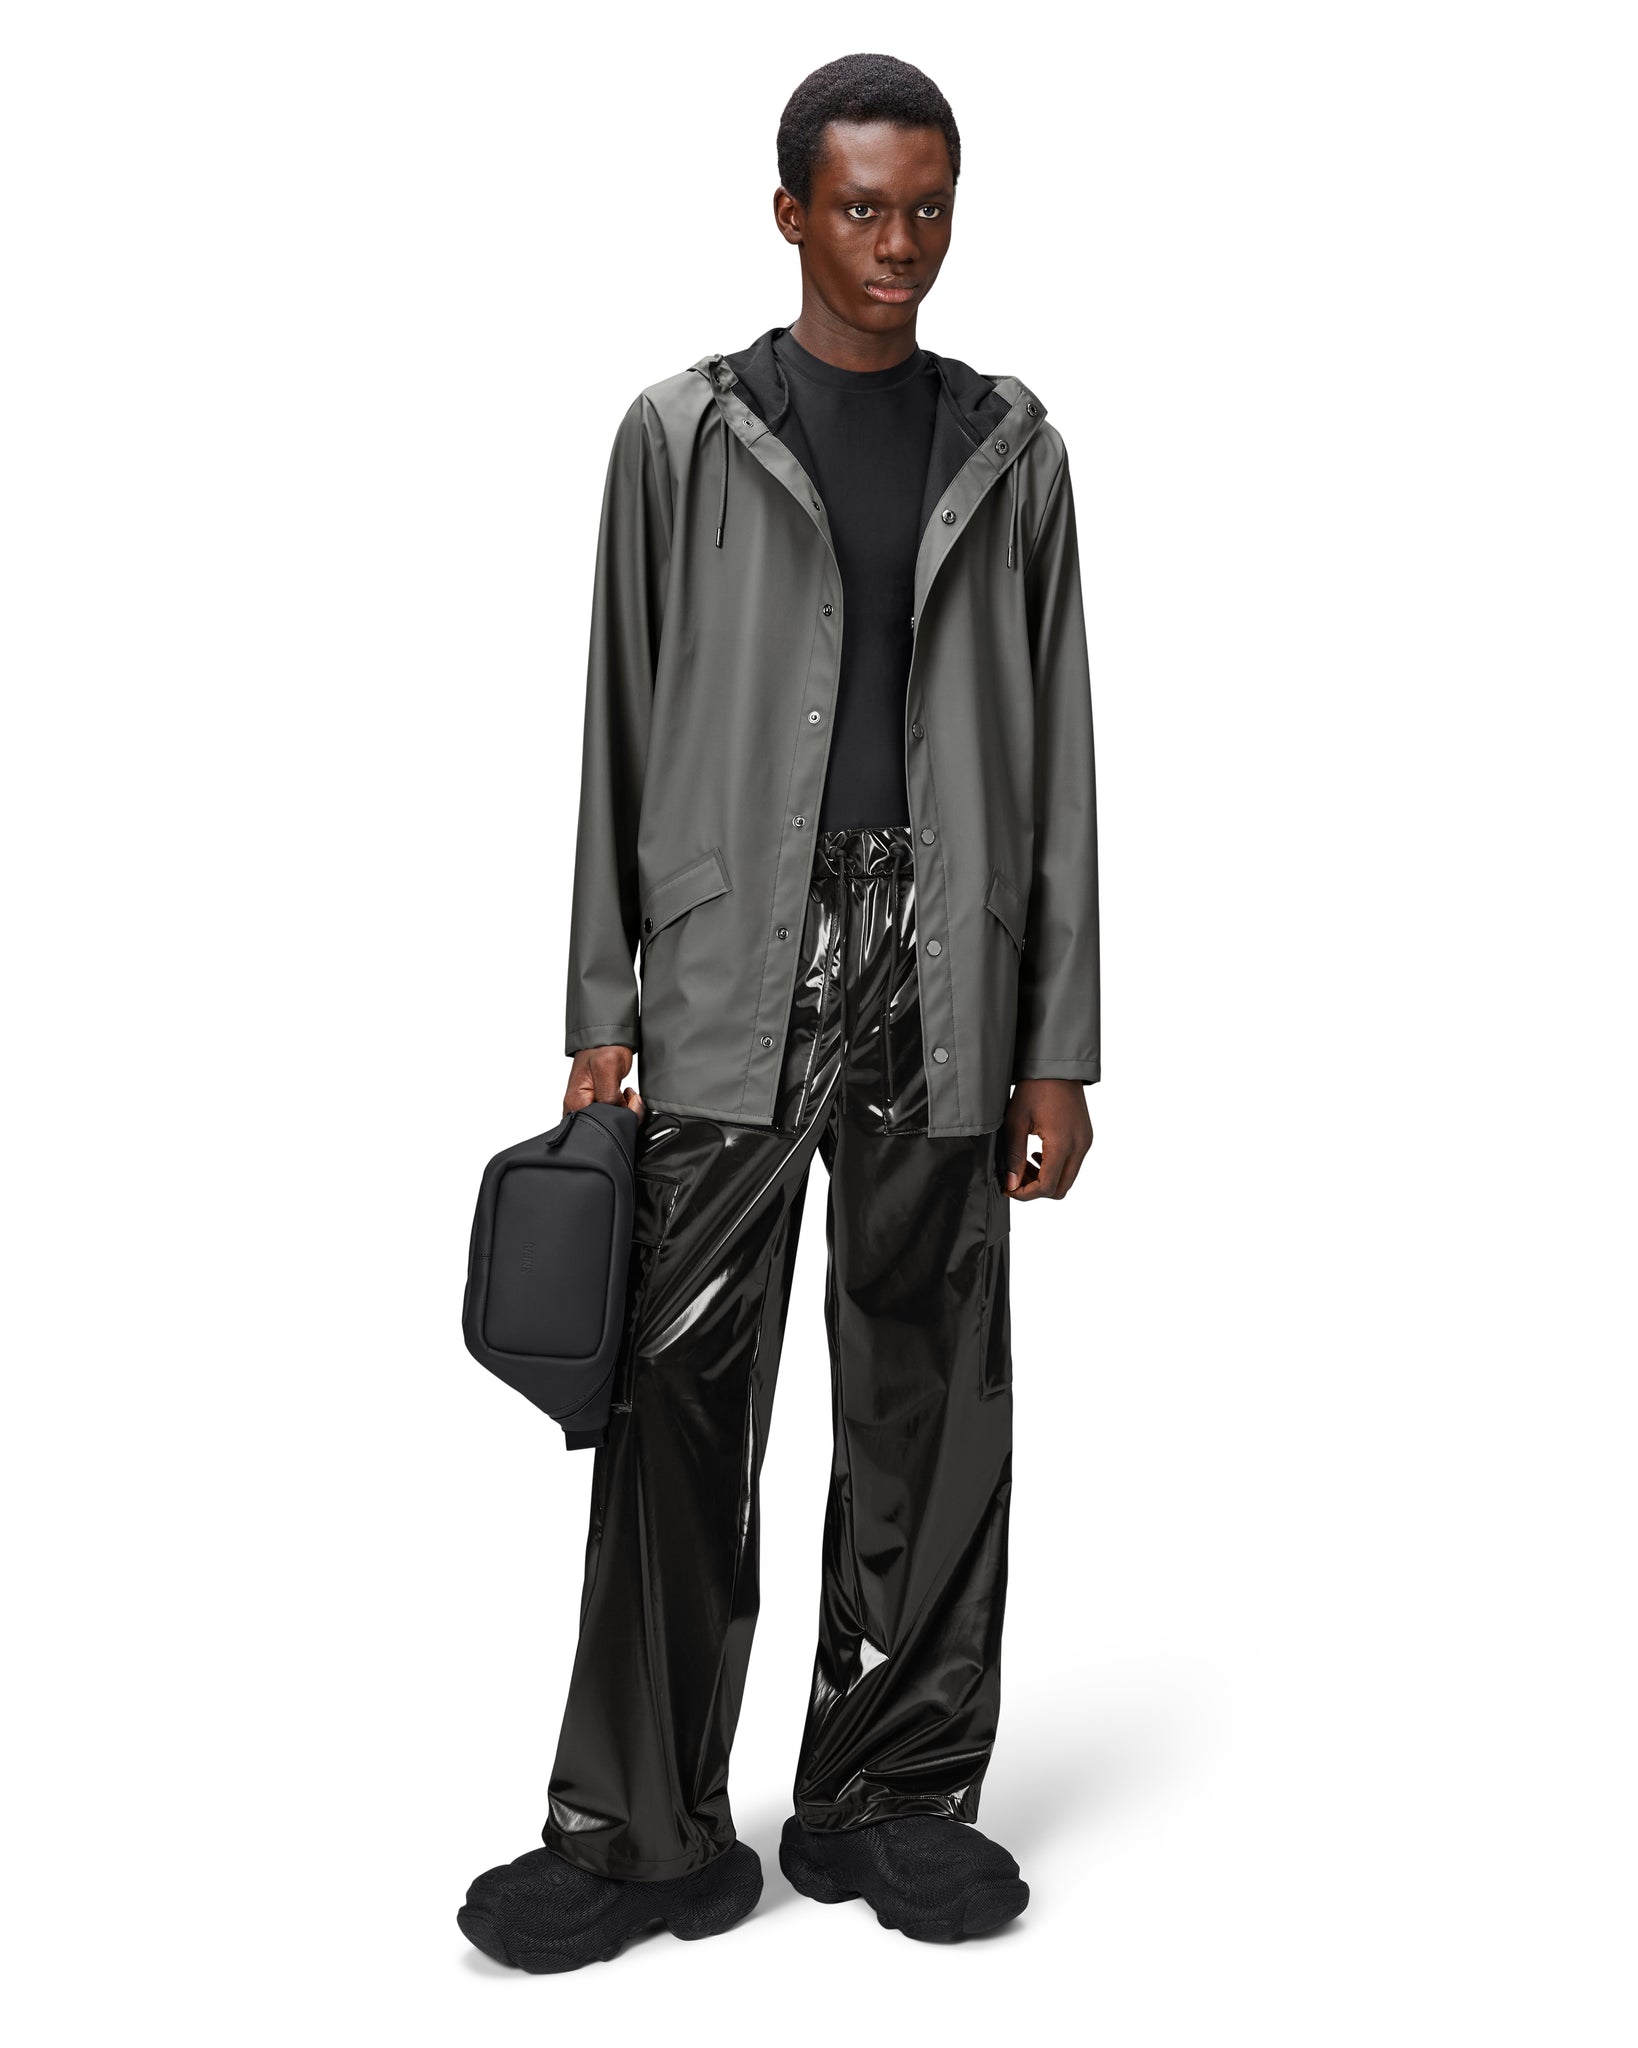 Jacket Raincoat - Grey (Unisex)